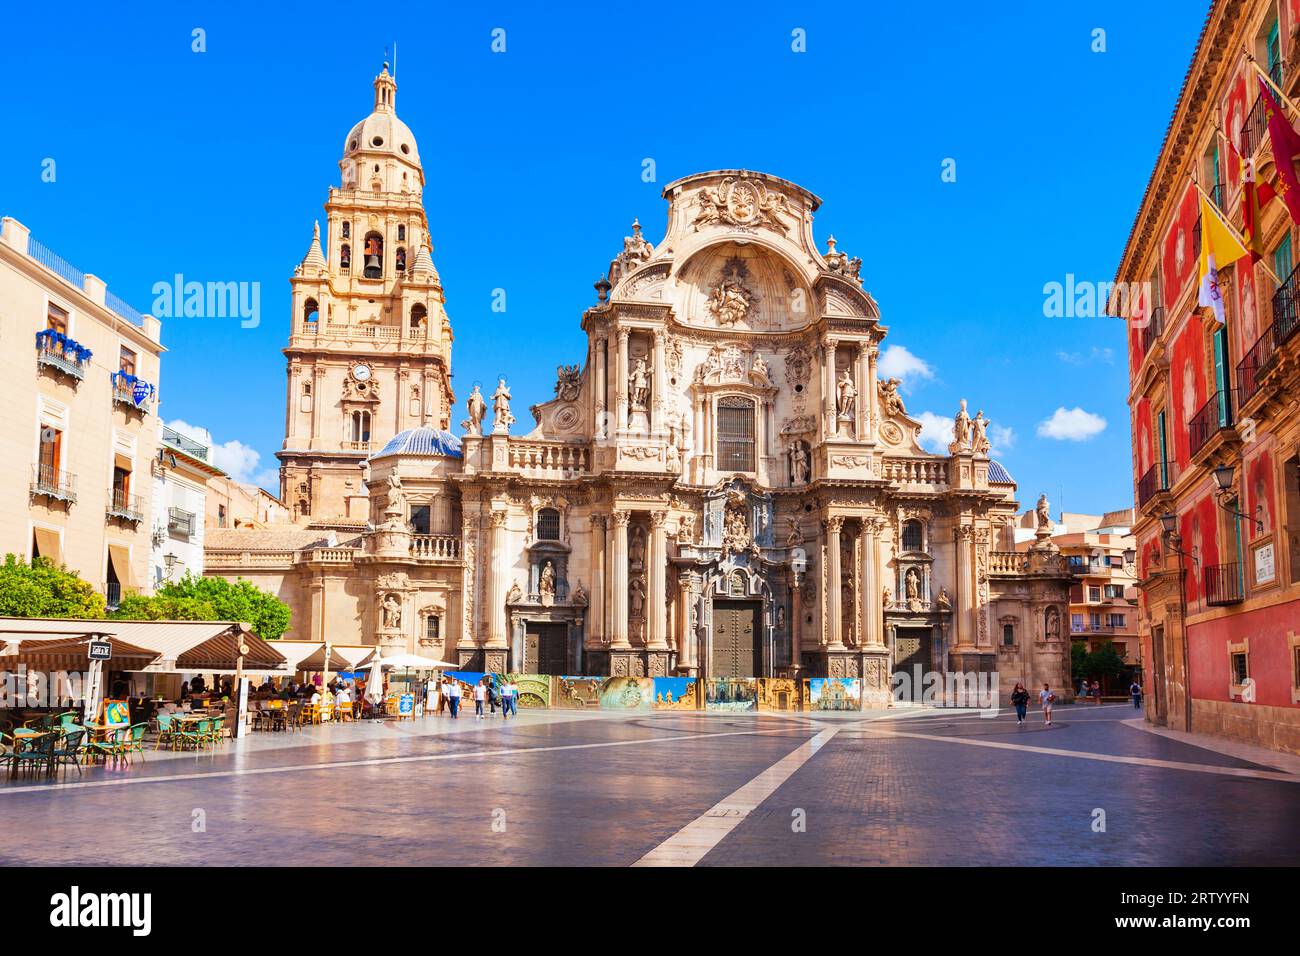 Murcia, Spagna - 19 ottobre 2021: La cattedrale di Santa Maria a Murcia. Murcia è una città nel sud-est della Spagna. Foto Stock